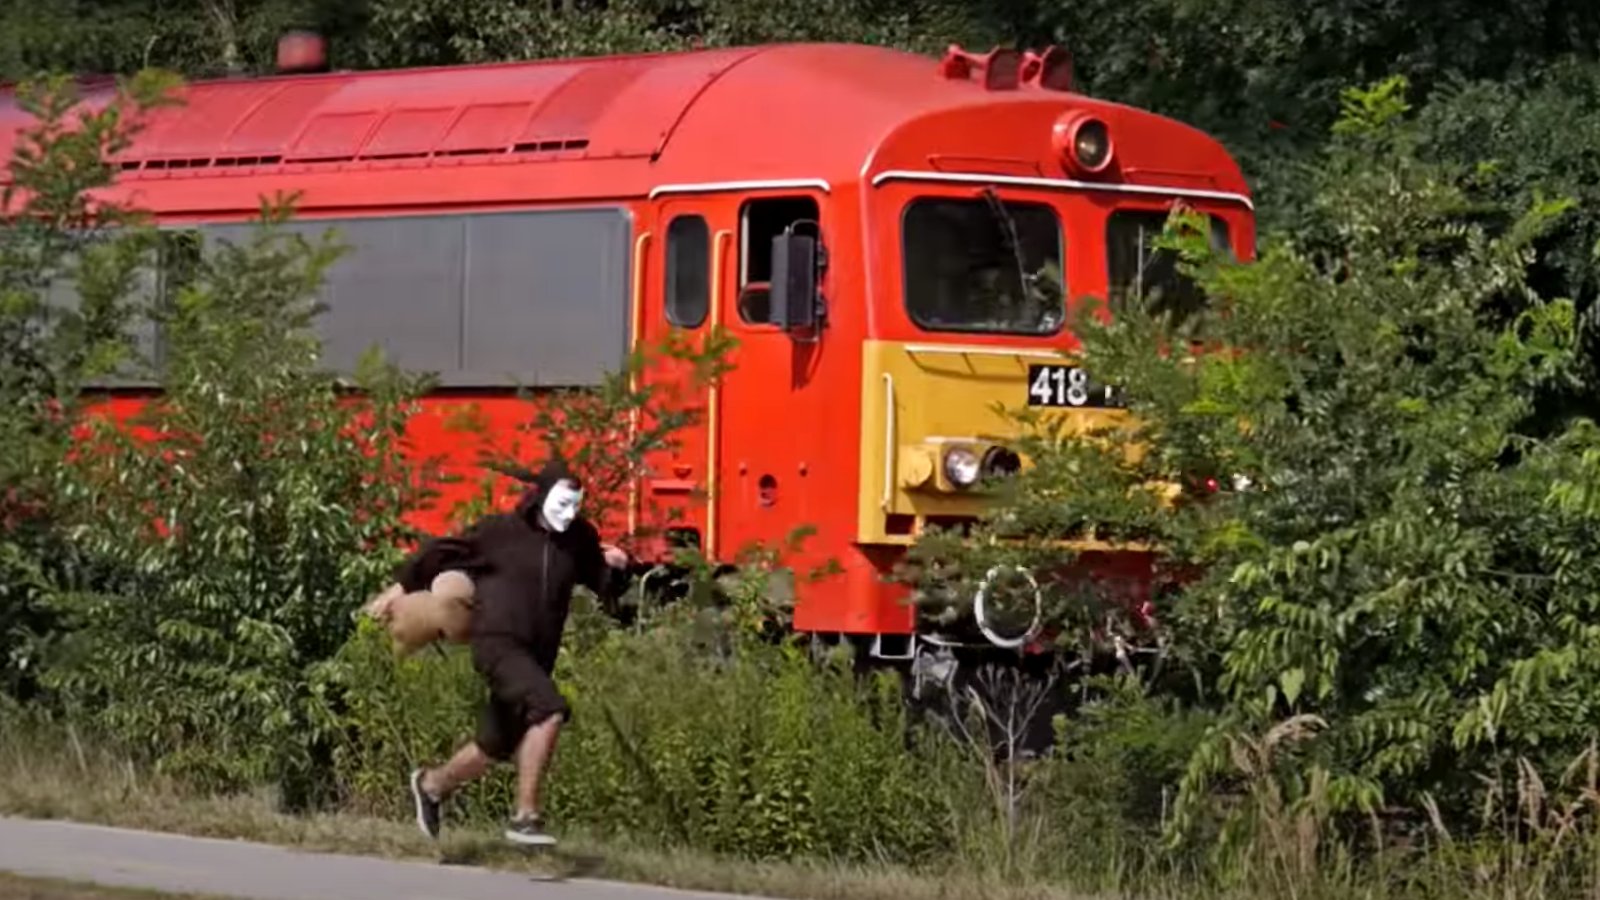 Csigajelmezes férfi futva előzi meg a vonatot a Mátészalka–Debrecen vasútvonalon